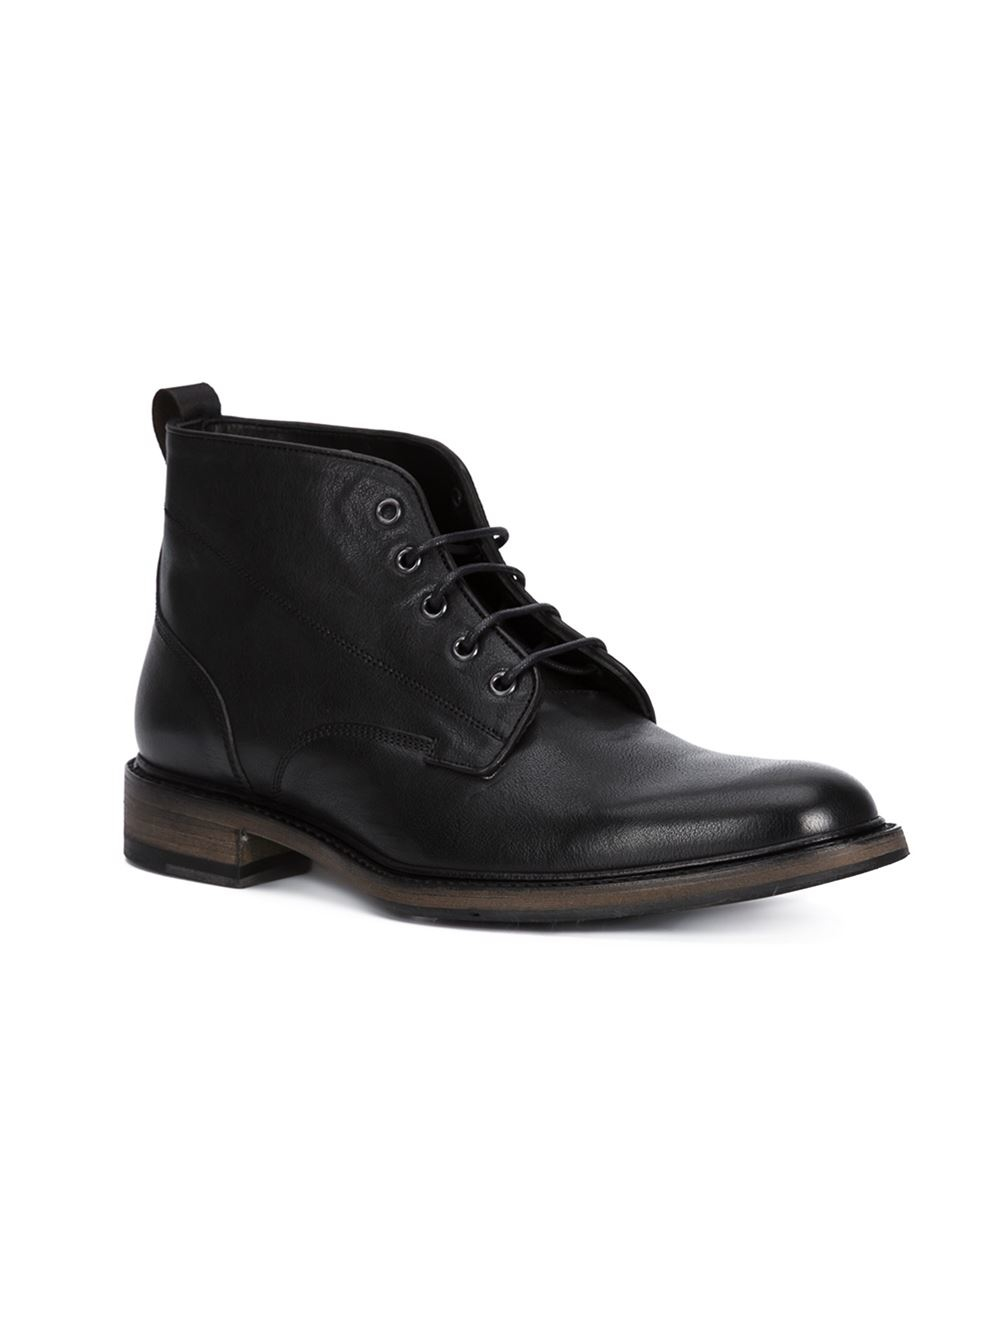 Rag & bone 'spencer Chukka' Boots in Black for Men | Lyst